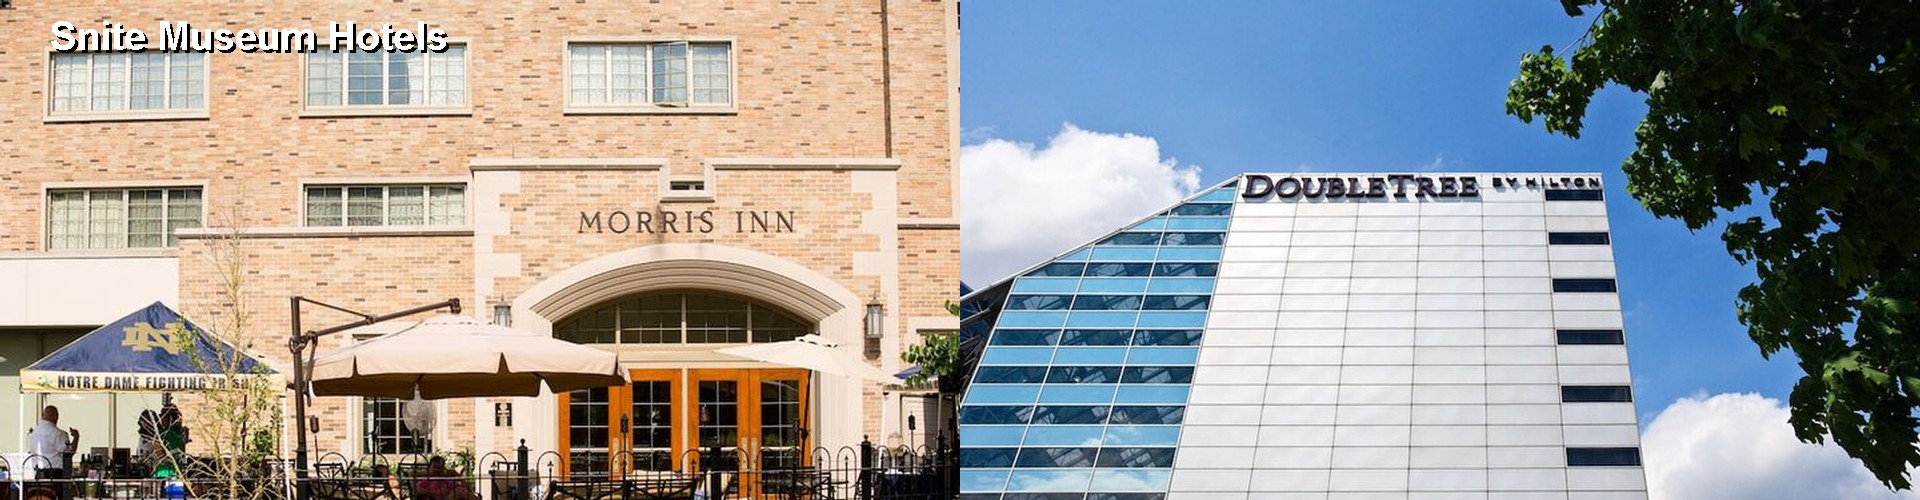 4 Best Hotels near Snite Museum